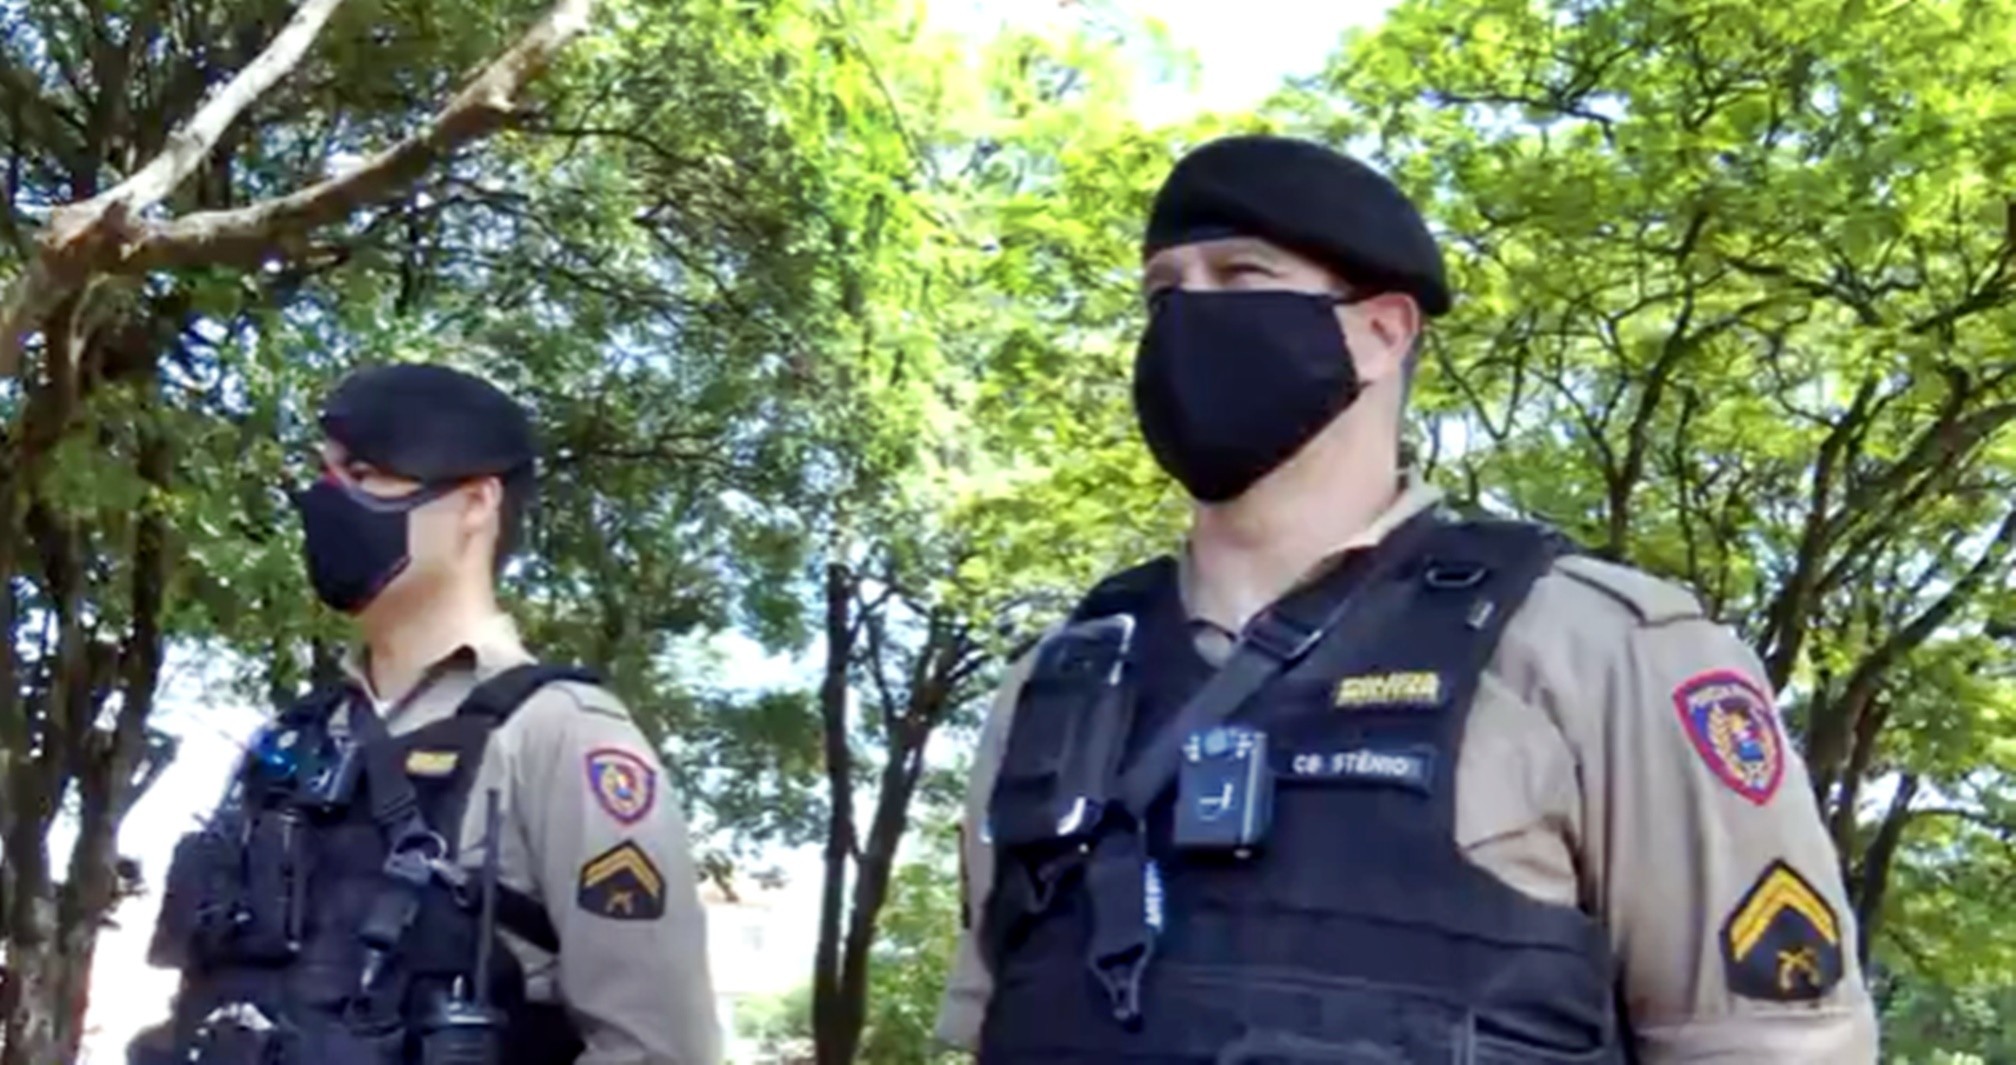 Policiais militares adotam uso de câmeras de monitoramento nos coletes balísticos em Itaú de Minas